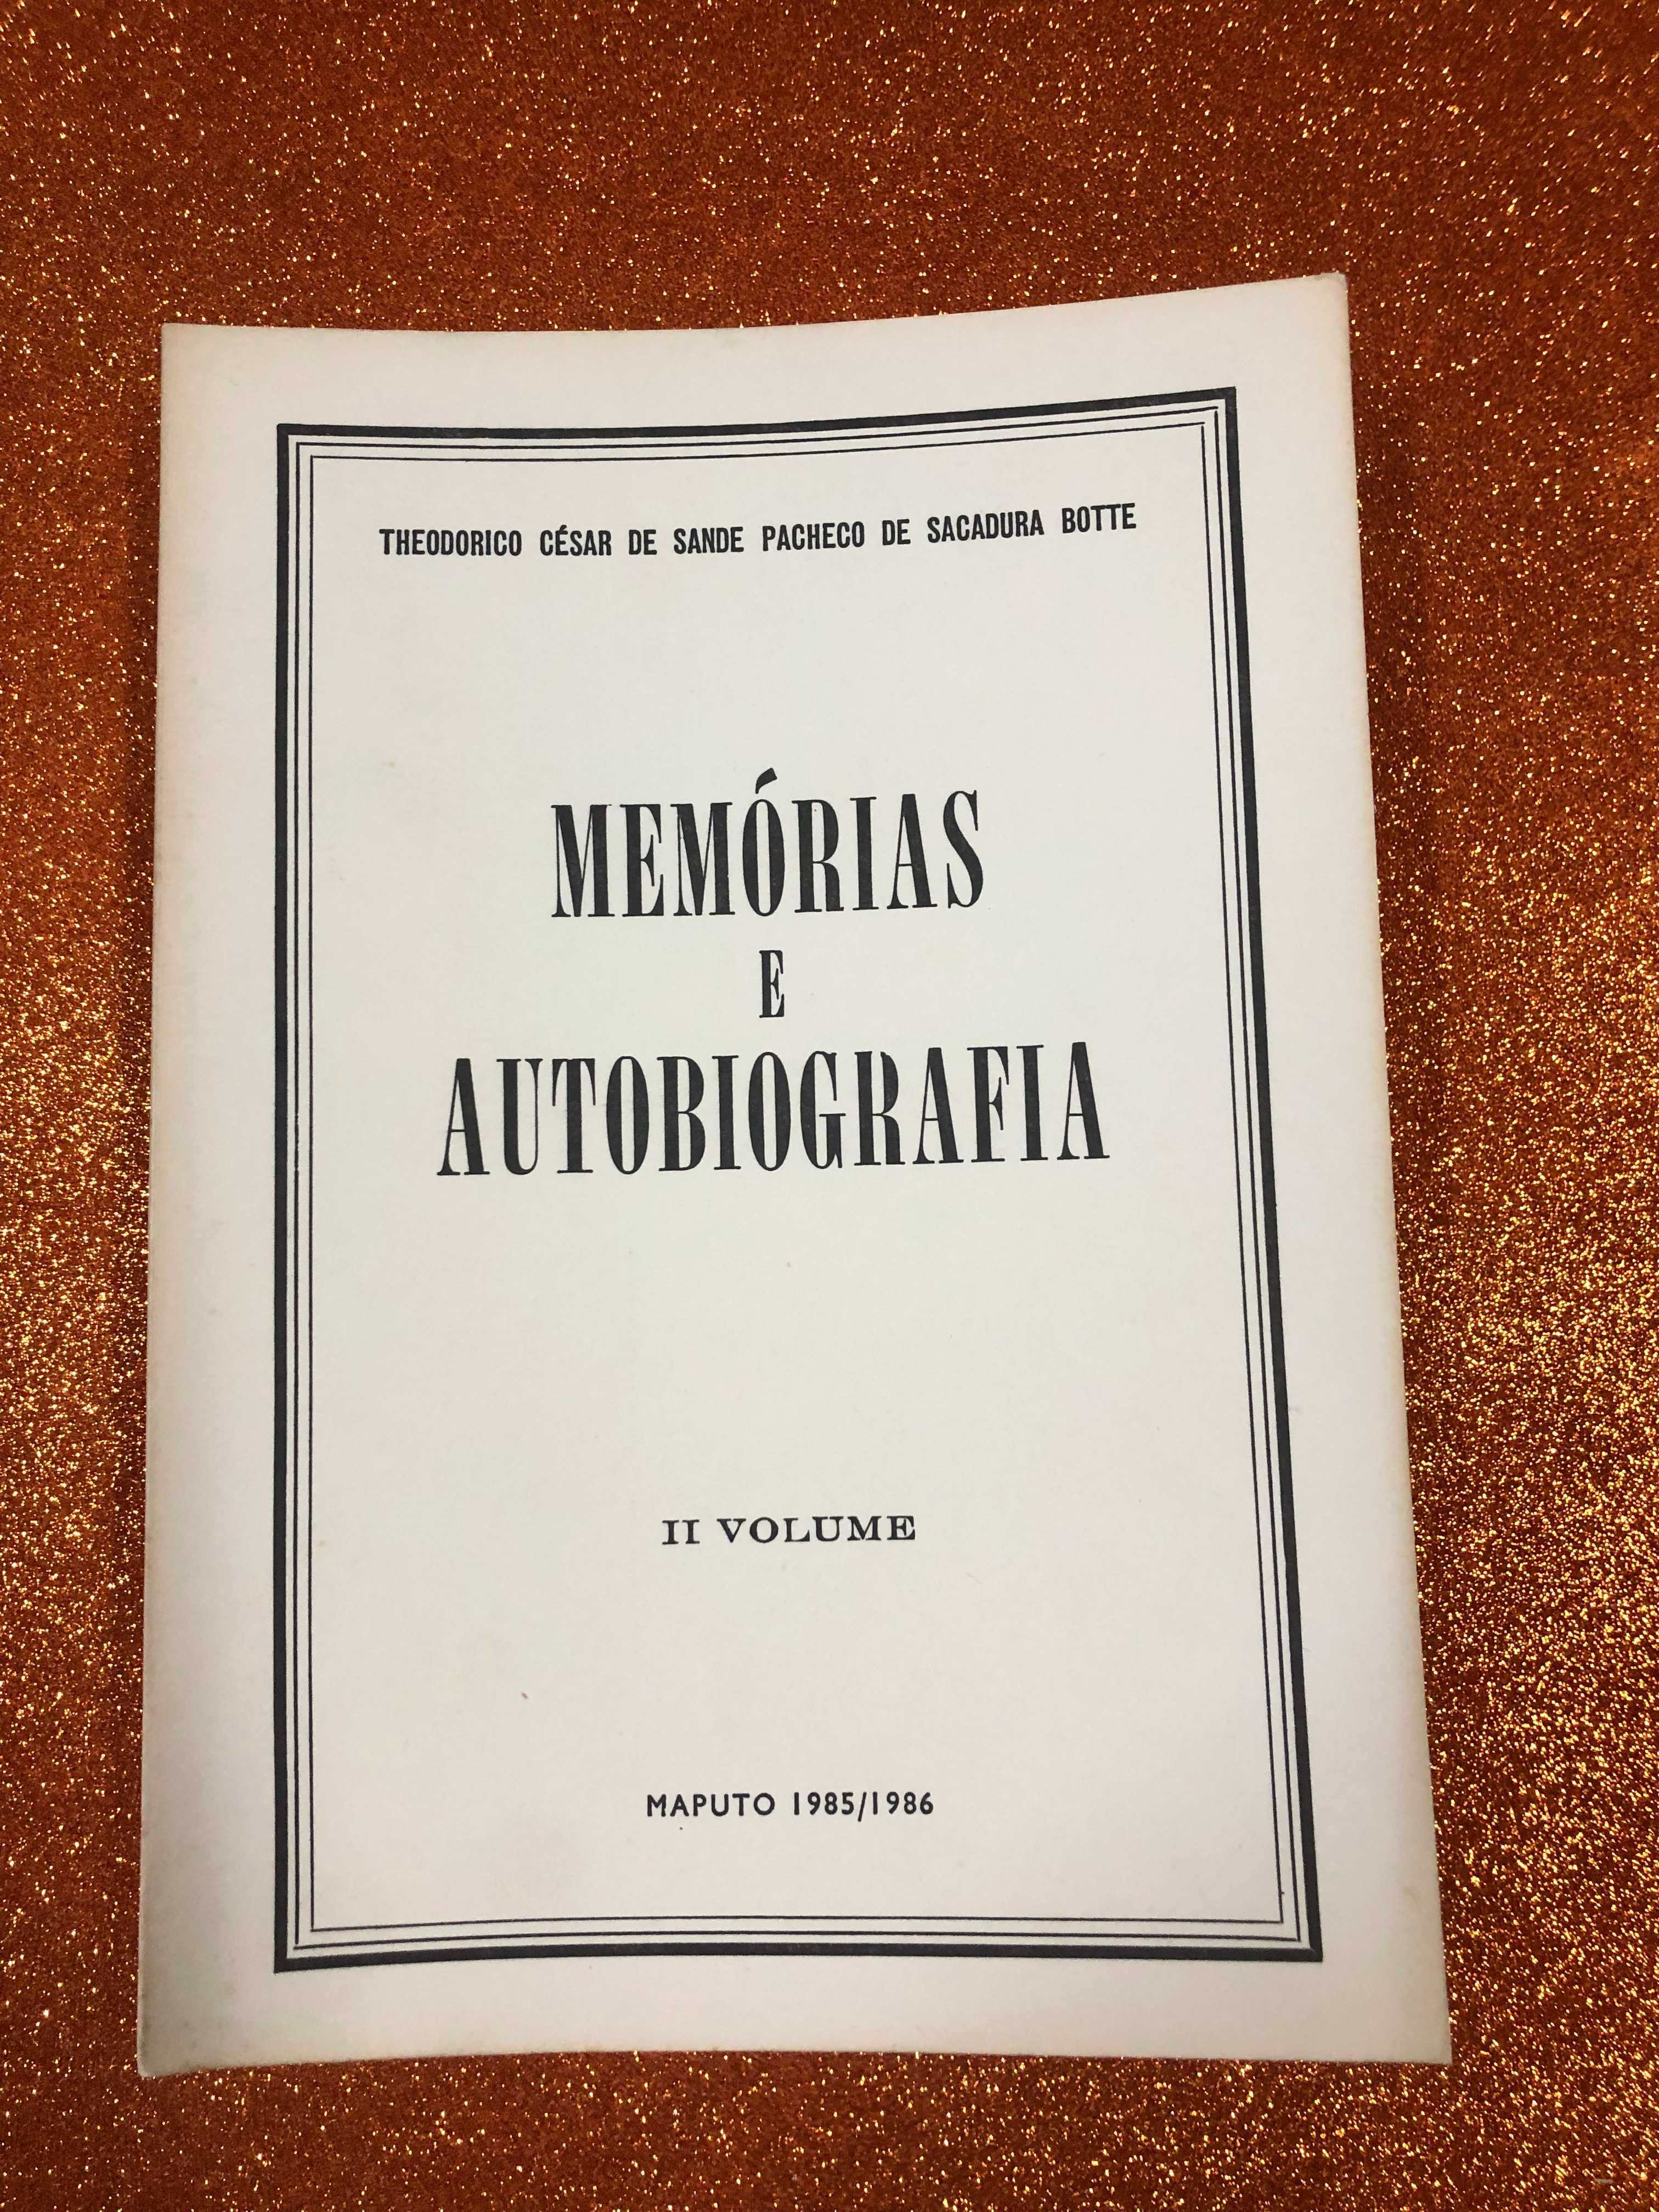 Memórias e autobiografia - Theodorico César de Sande Pacheco  Botte